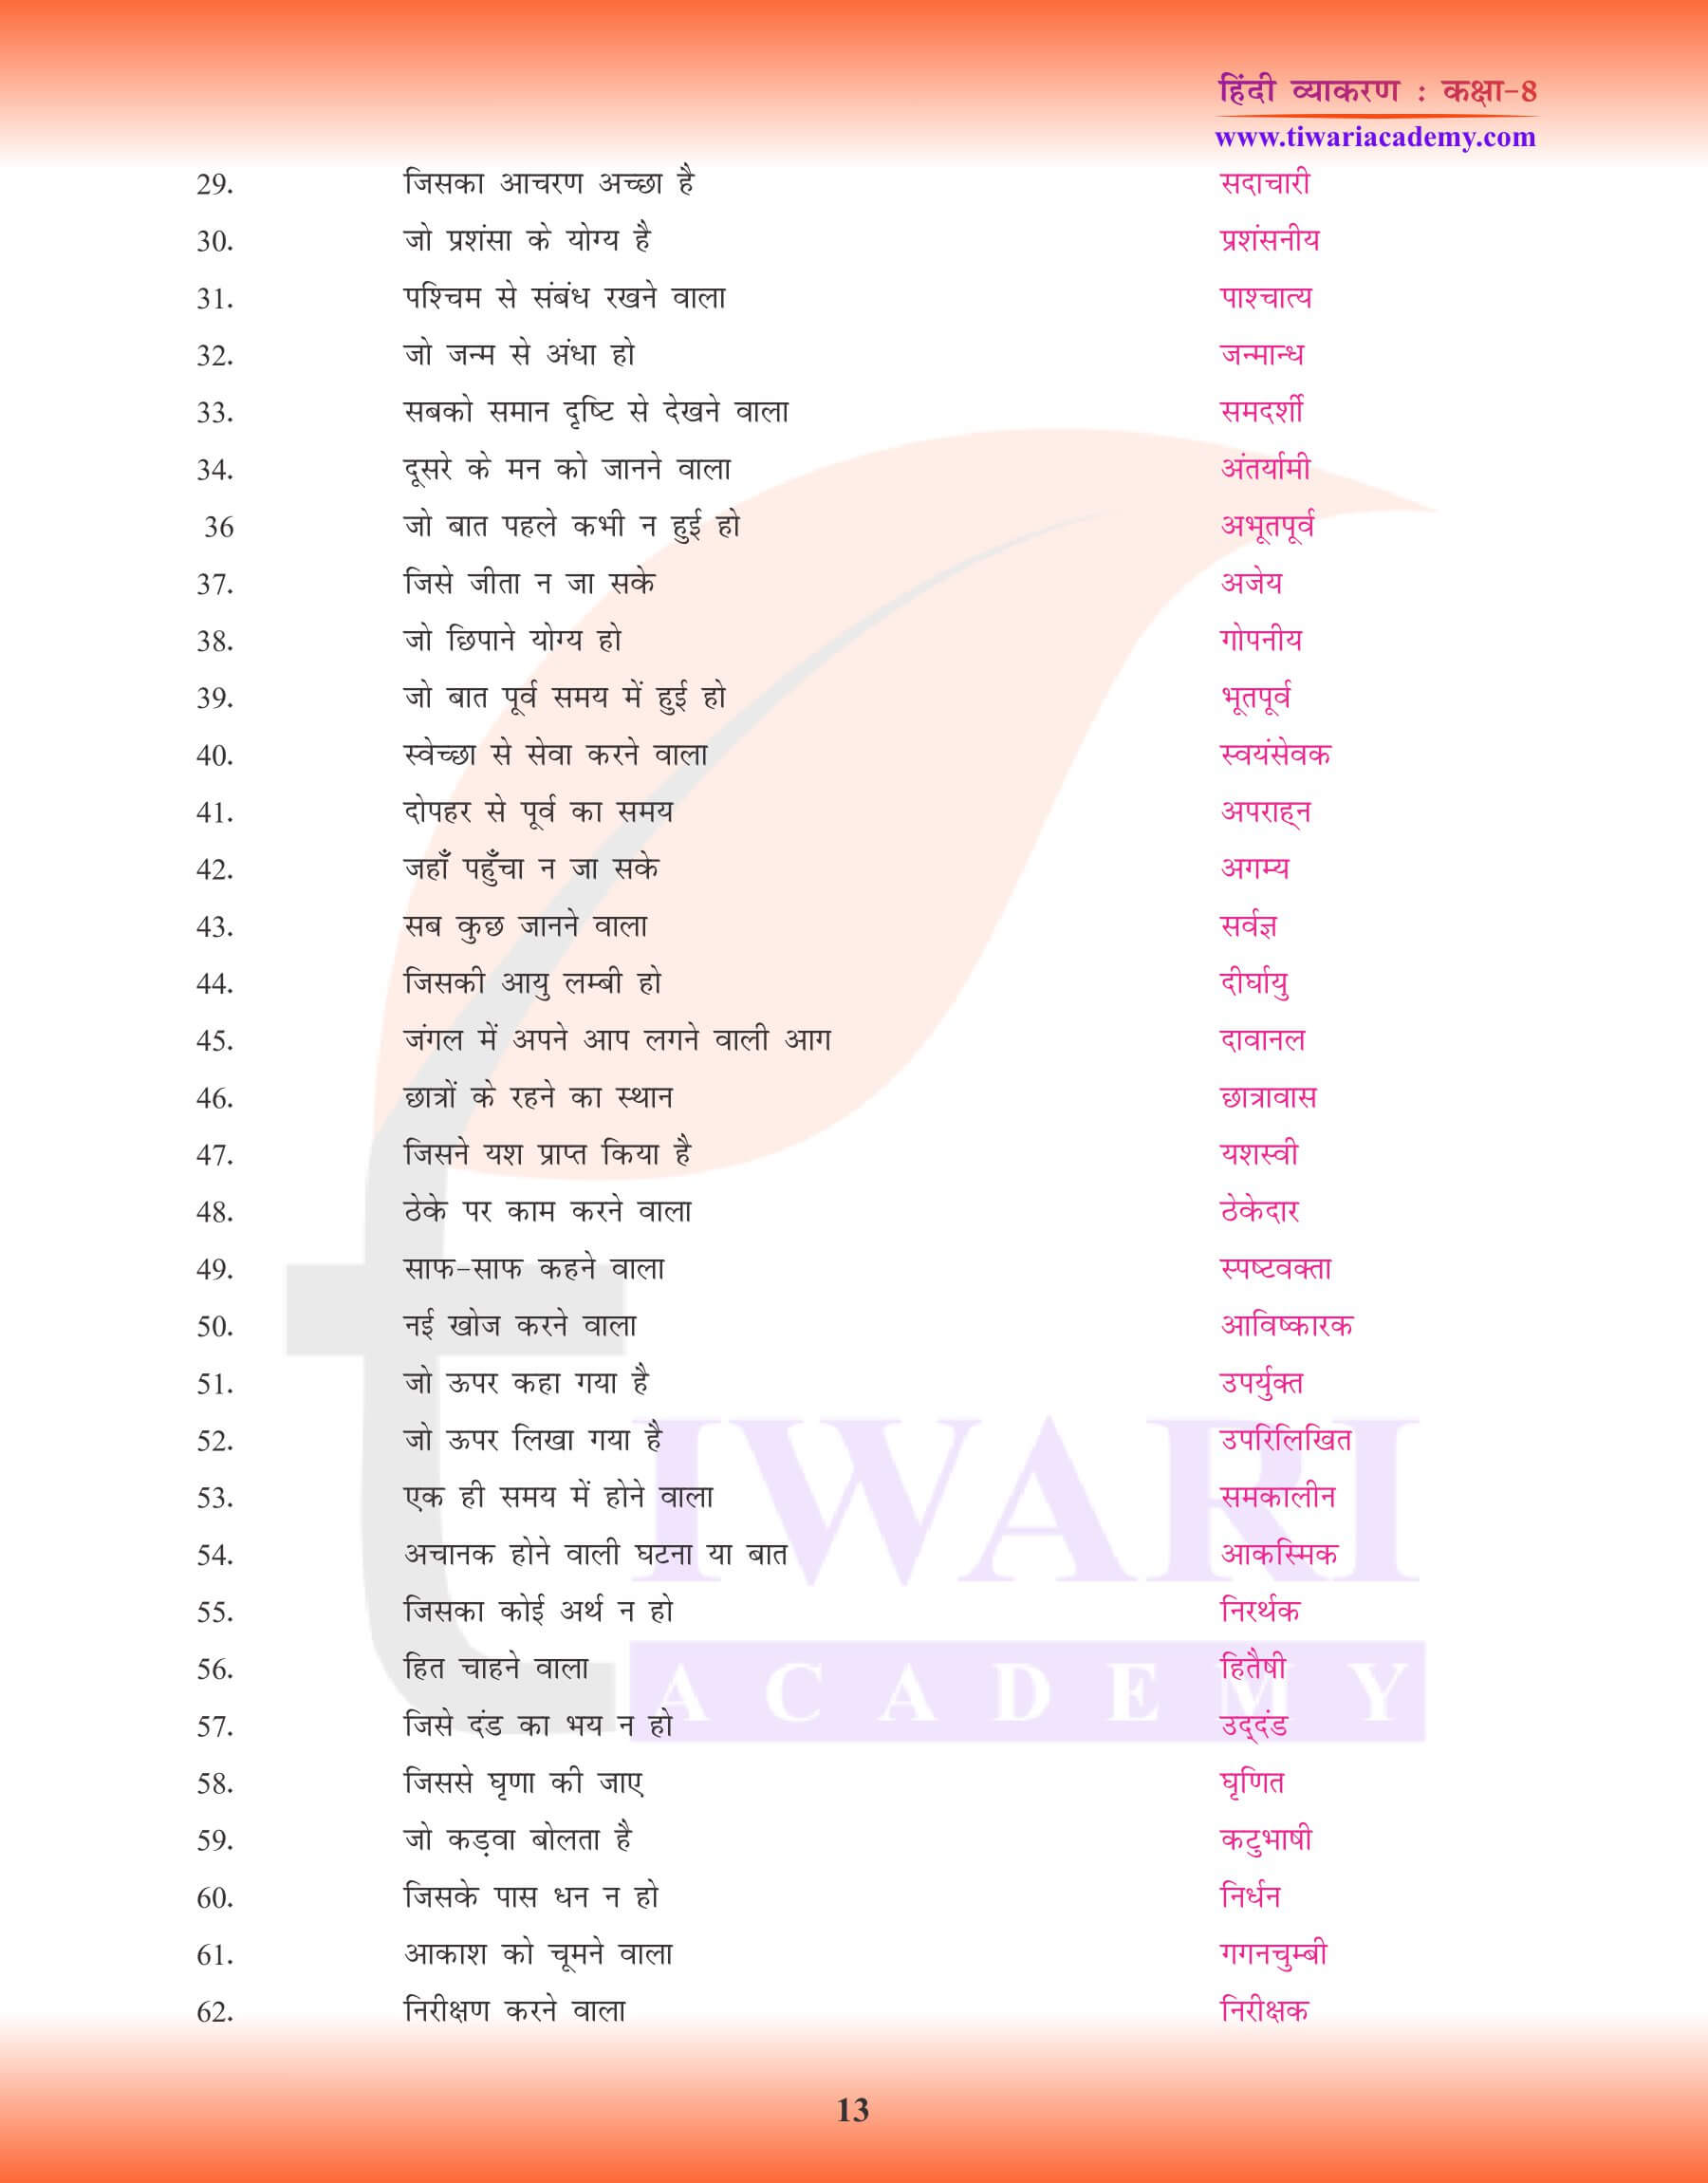 कक्षा 8 हिंदी व्याकरण में अनेक शब्दों के लिए एक शब्द के उदाहरण